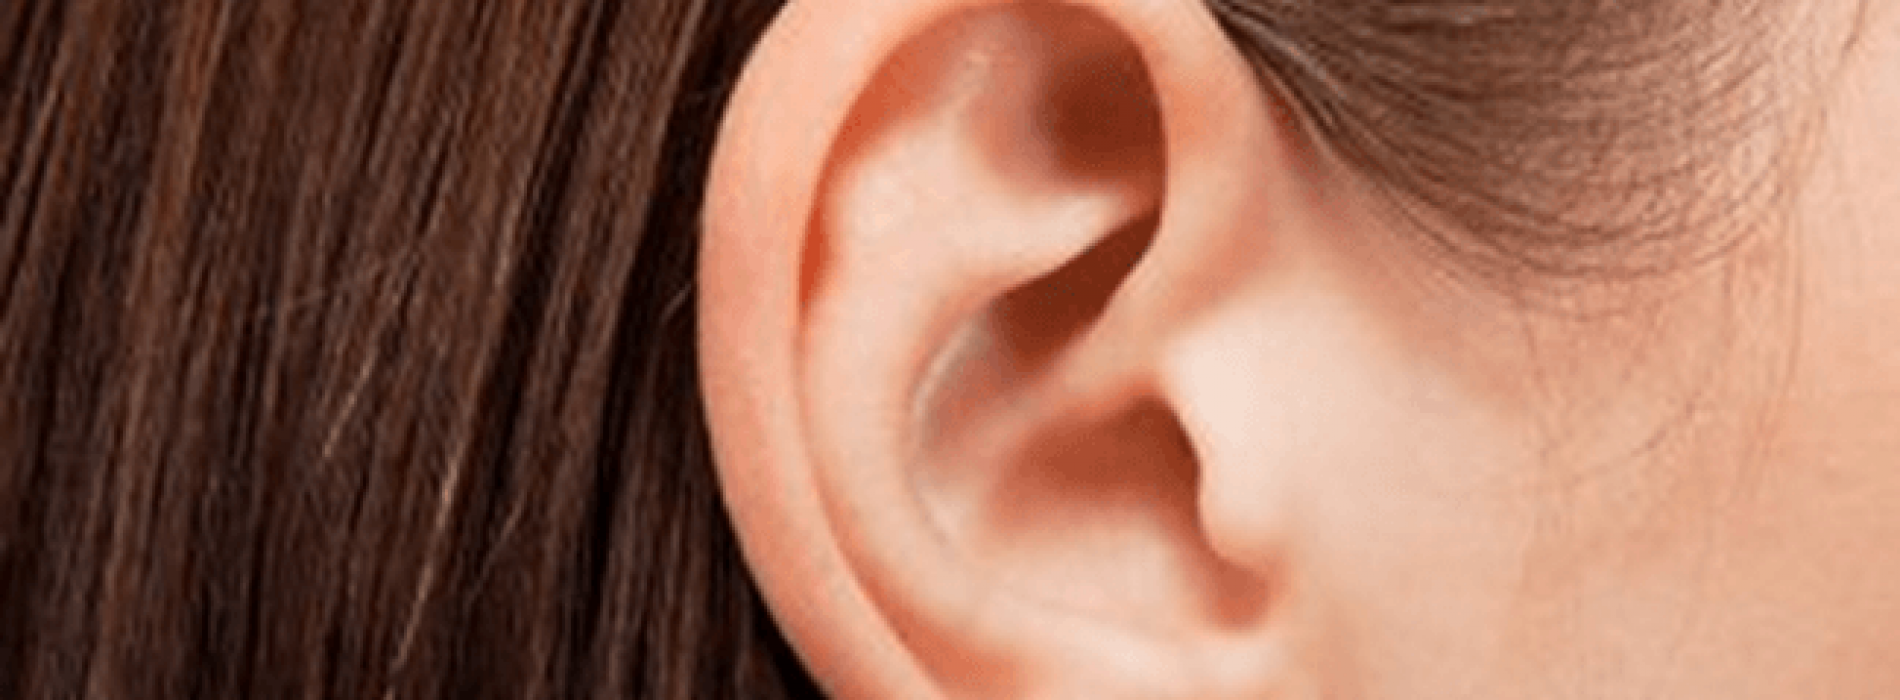 5 natuurlijke remedies tegen tinnitus